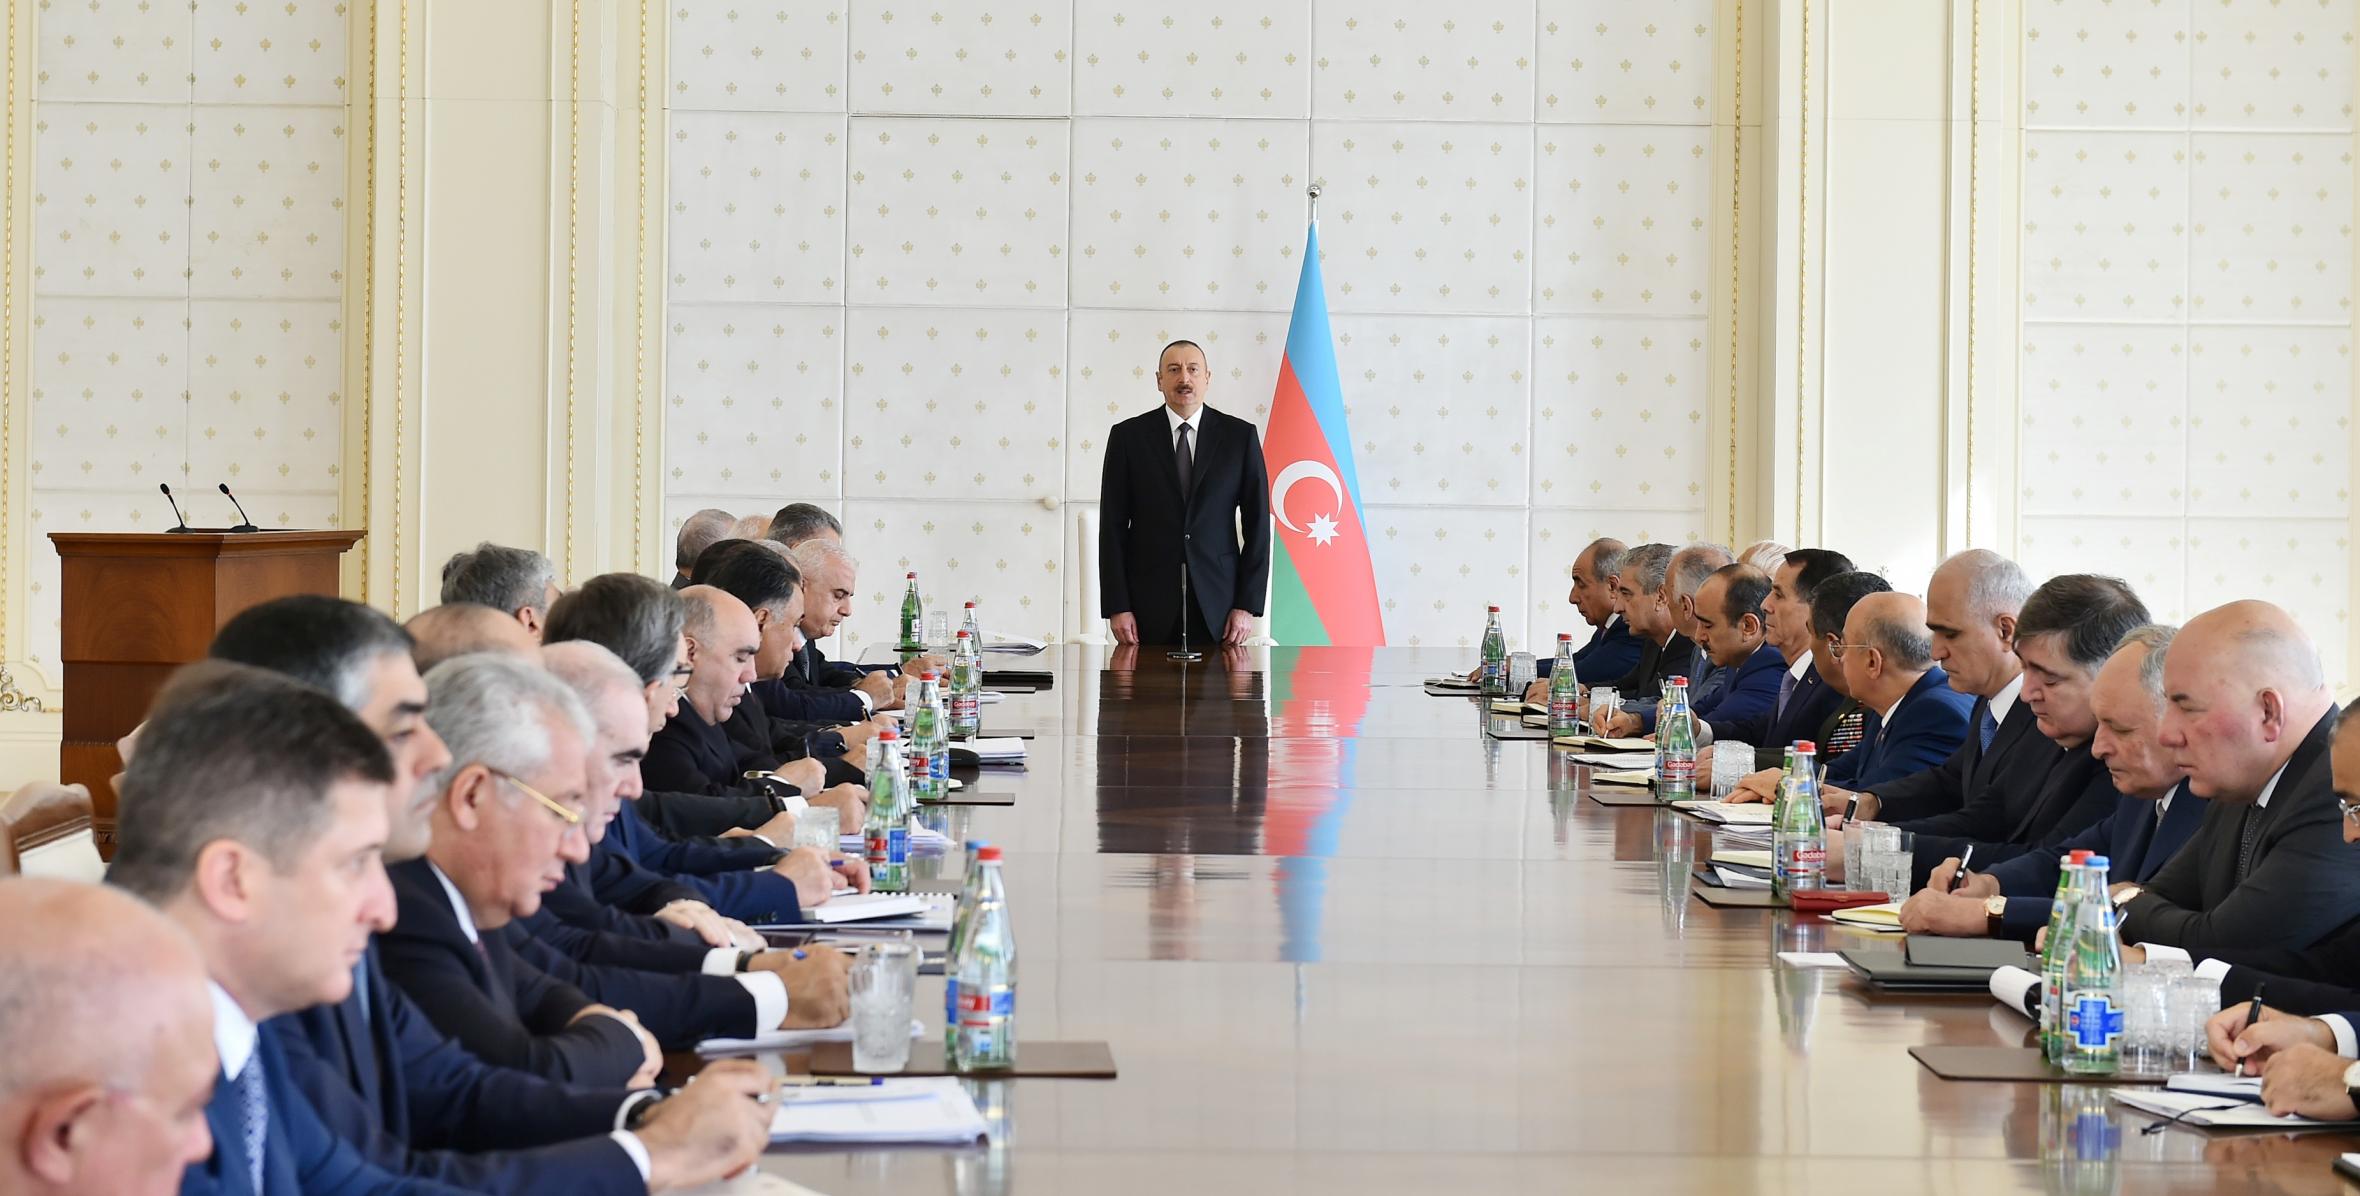 Вступительная речь Ильхама Алиева на заседании Кабинета Министров, посвященное итогам социально-экономического развития в первой половине 2017 года и предстоящим задачам